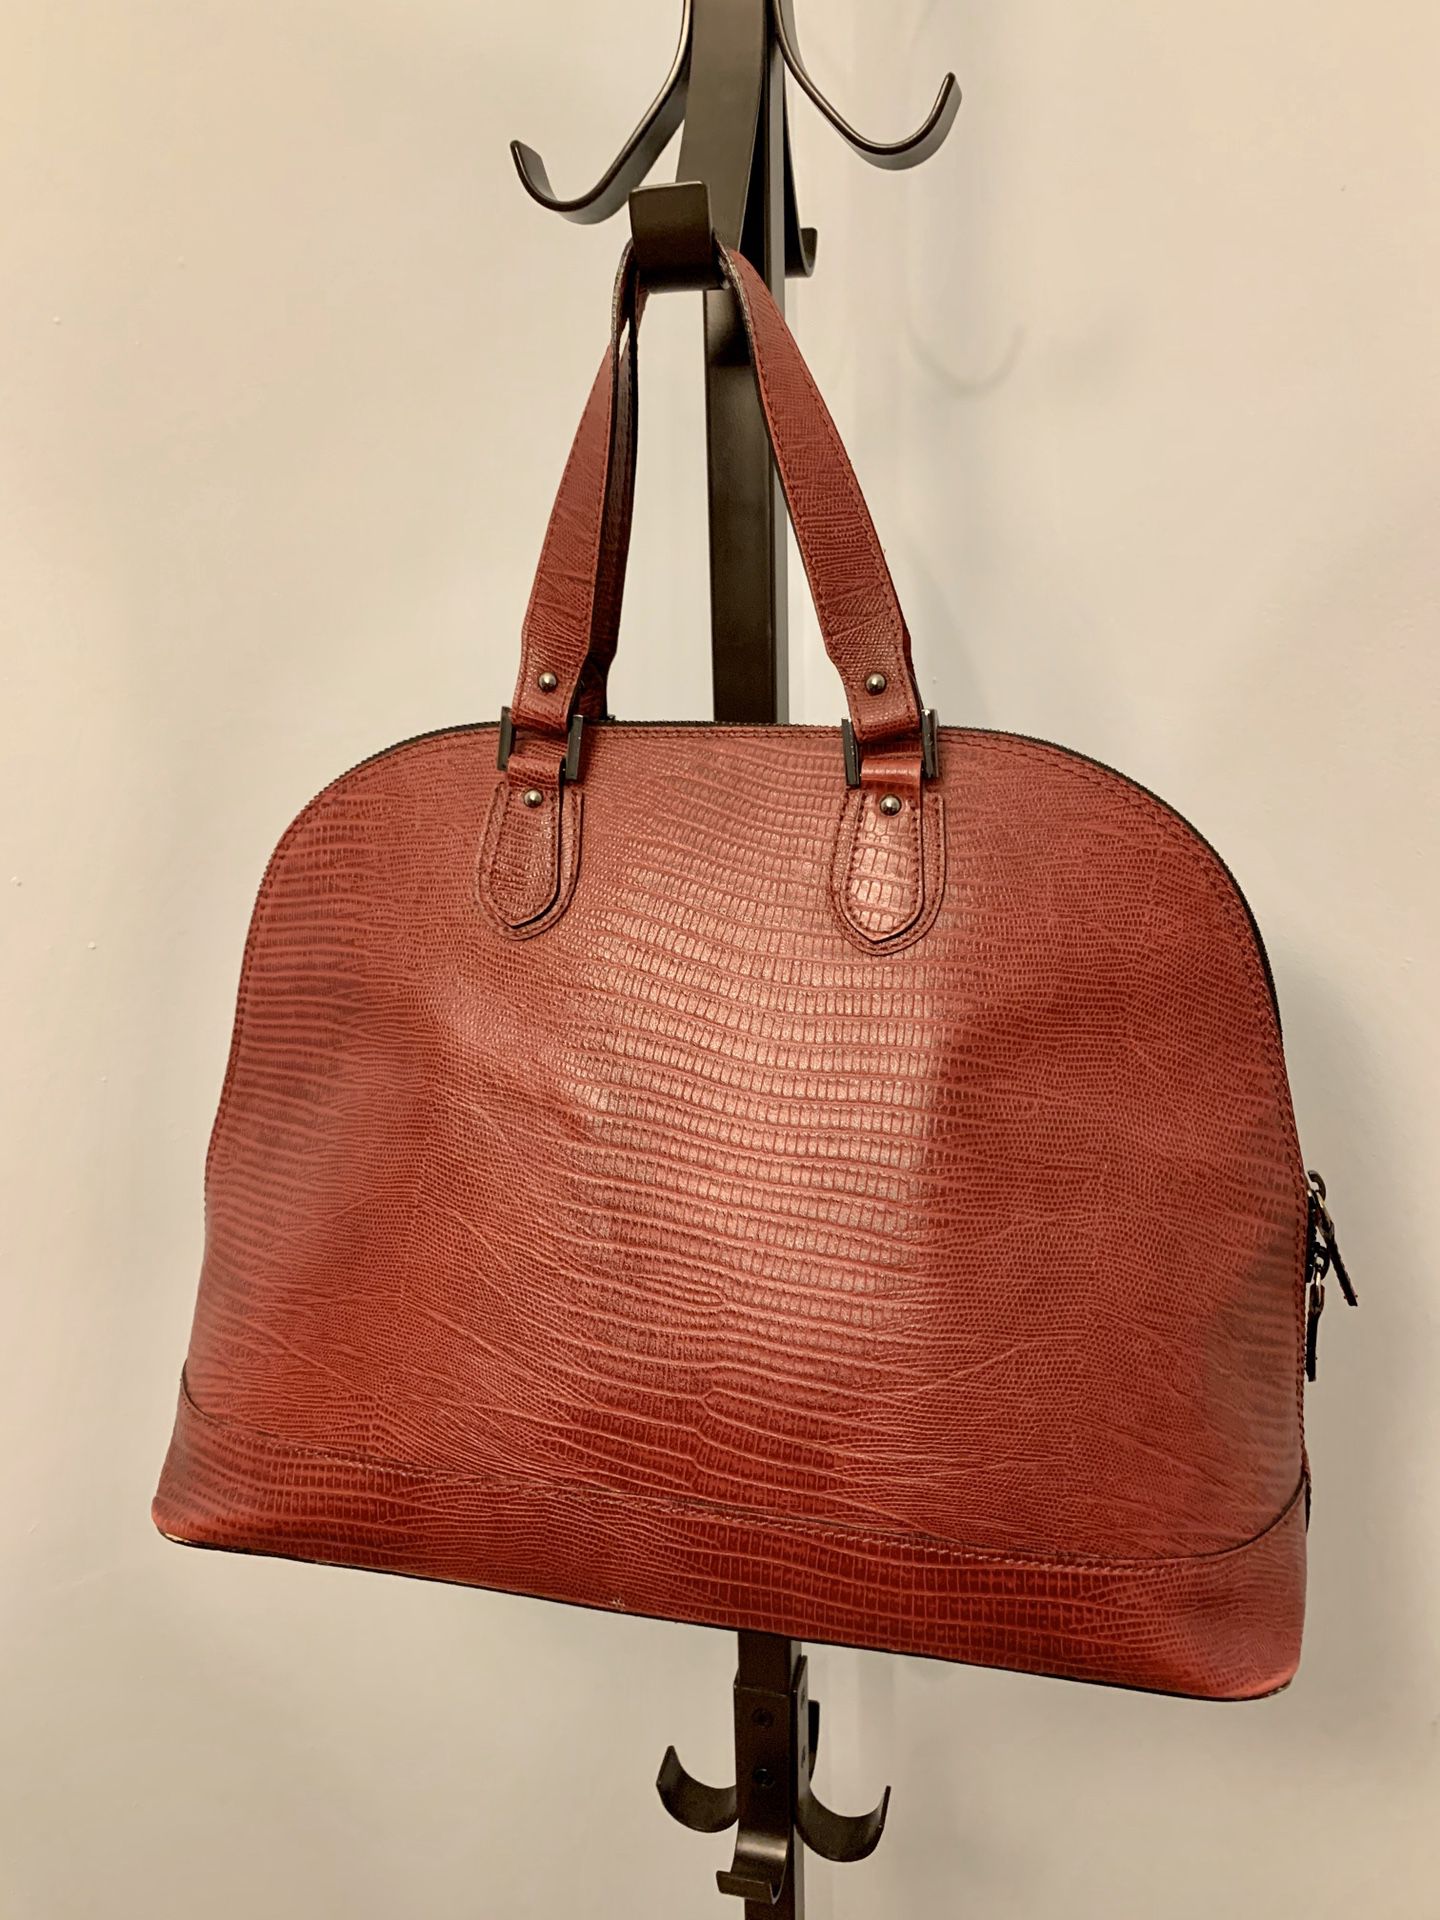 Made in Italy, Vittoria Napoli Italian Leather Handbag